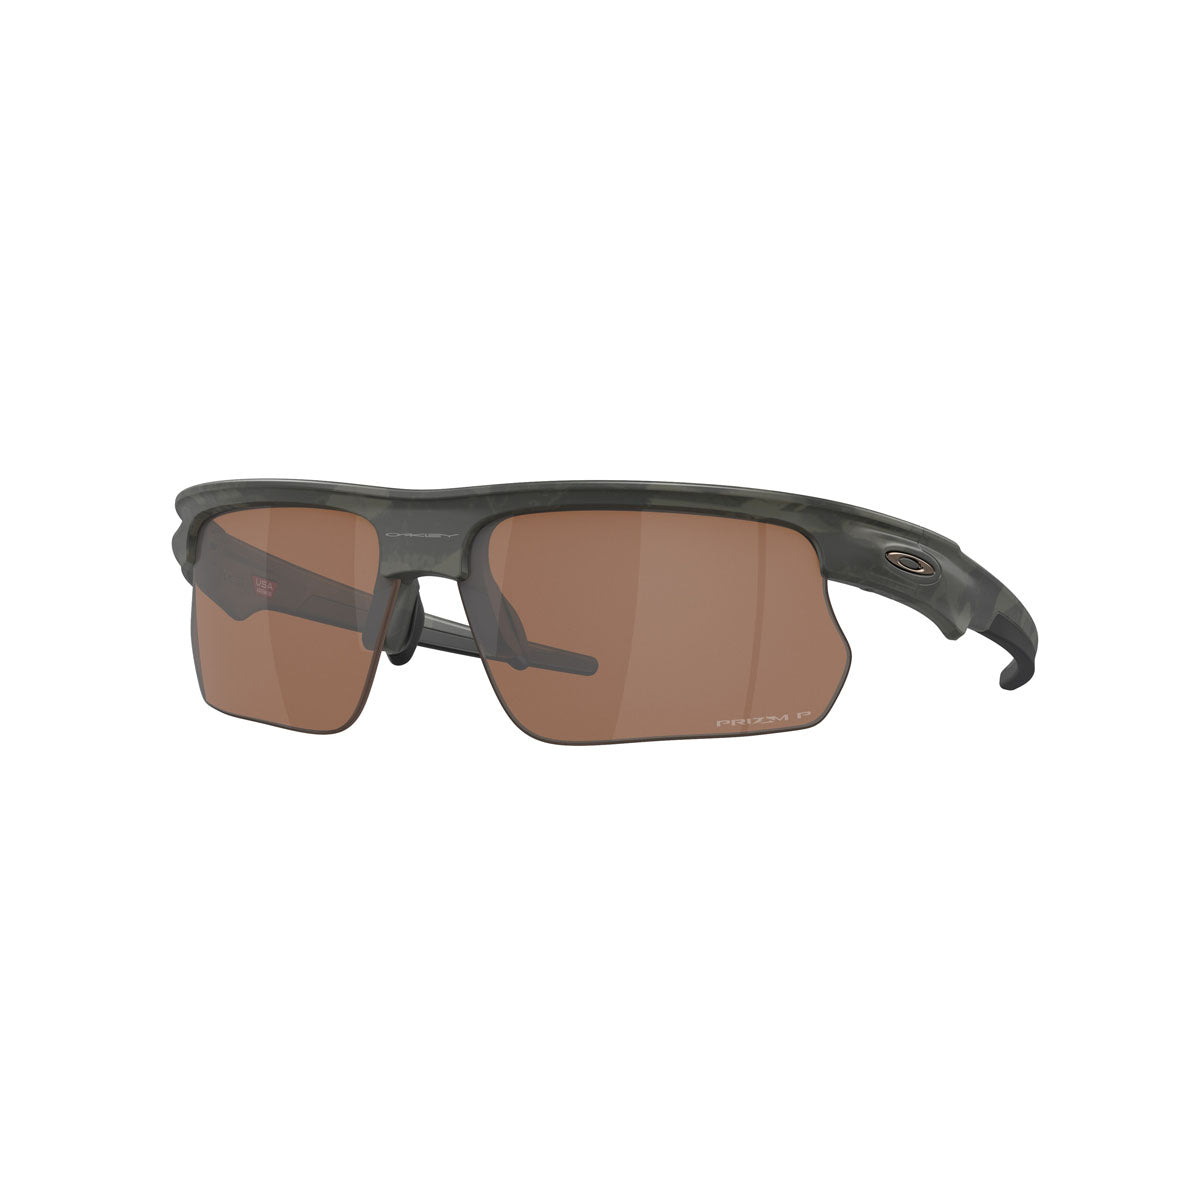 Oakley Bisphaera Polarized Sunglasses - Matte Olive Camo/Prizm Tungsten Polarized